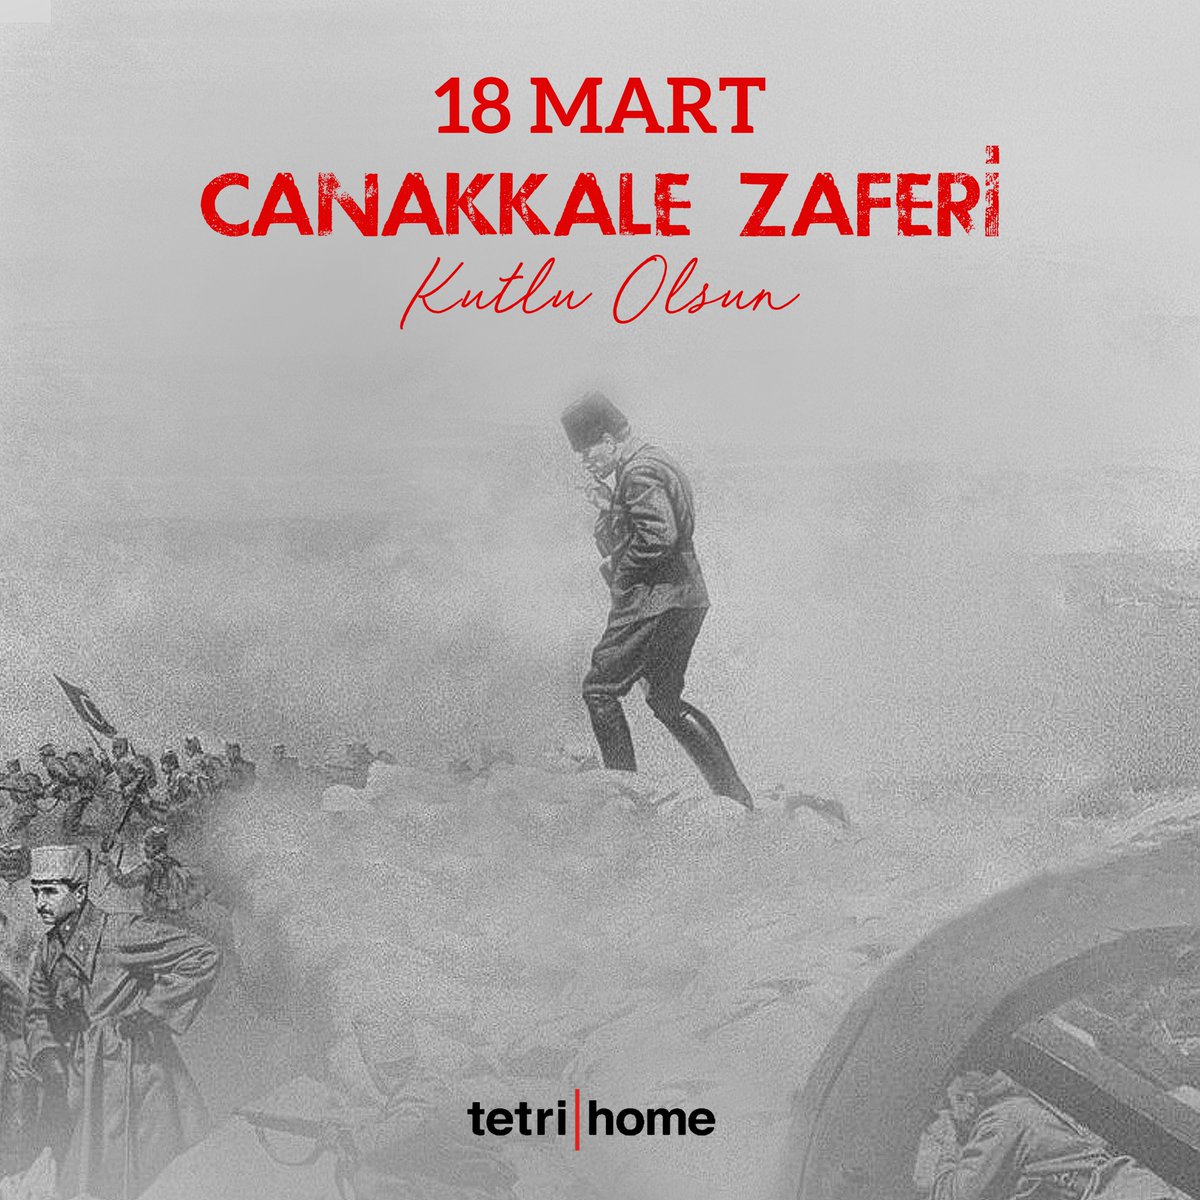 18 Mart Çanakkale Zaferi'nin 107. yılında başta Ulu Önderimiz Mustafa Kemal Atatürk olmak üzere tüm şehitlerimizi ve gazilerimizi saygı, minnet ve rahmetle anıyoruz. #18martcanakkalezaferi